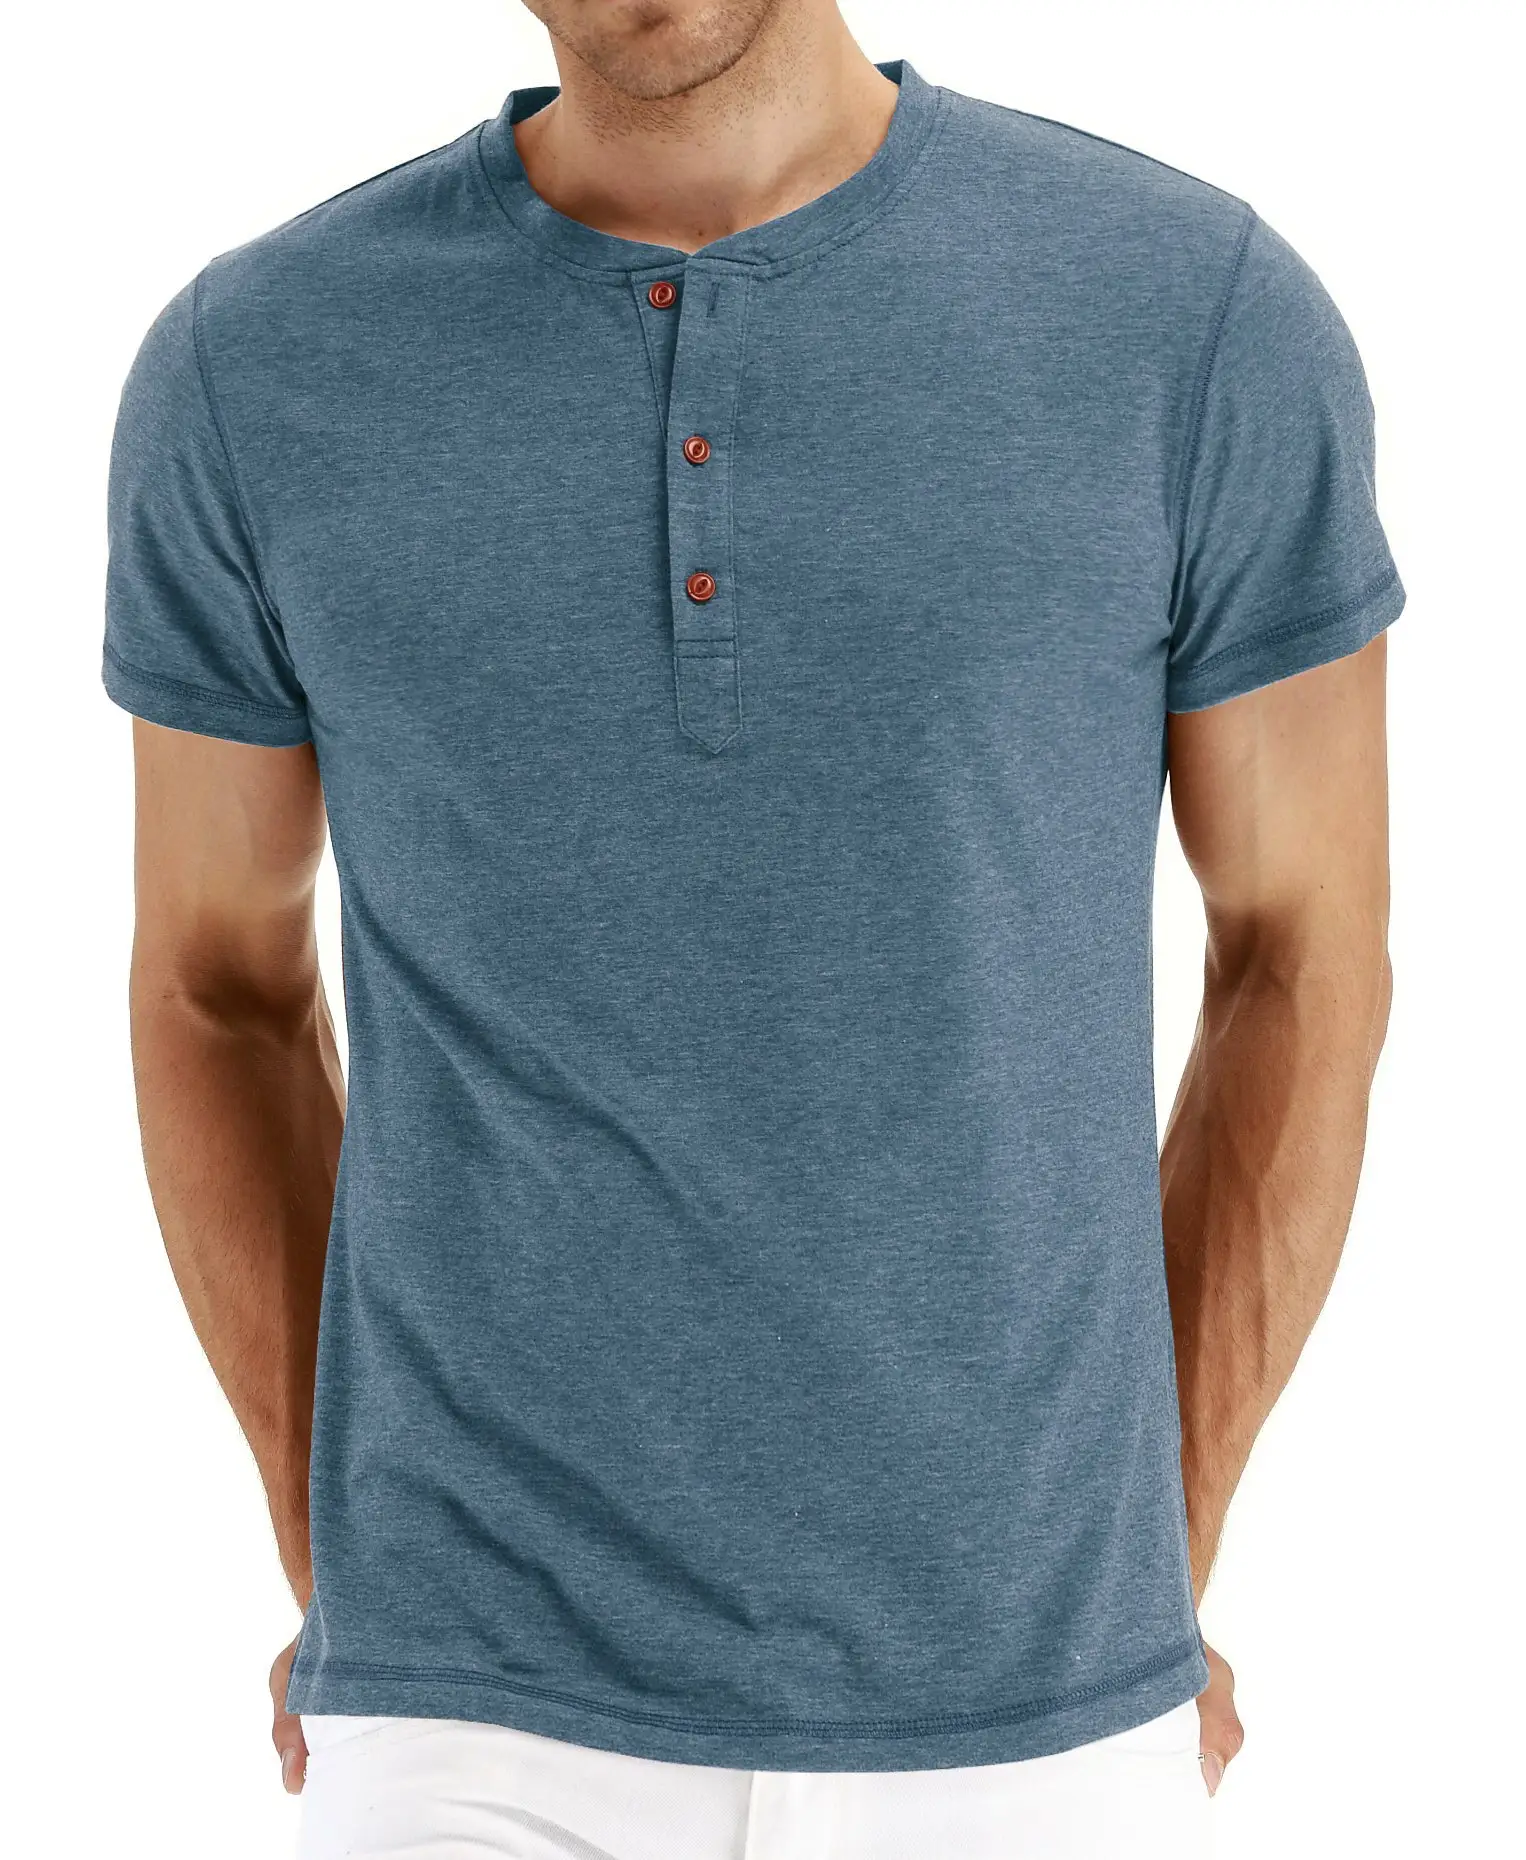 Maining थोक उच्च गुणवत्ता कपास पुरुषों सादा टी शर्ट बुनियादी टी शर्ट वी के आकार का गर्दन